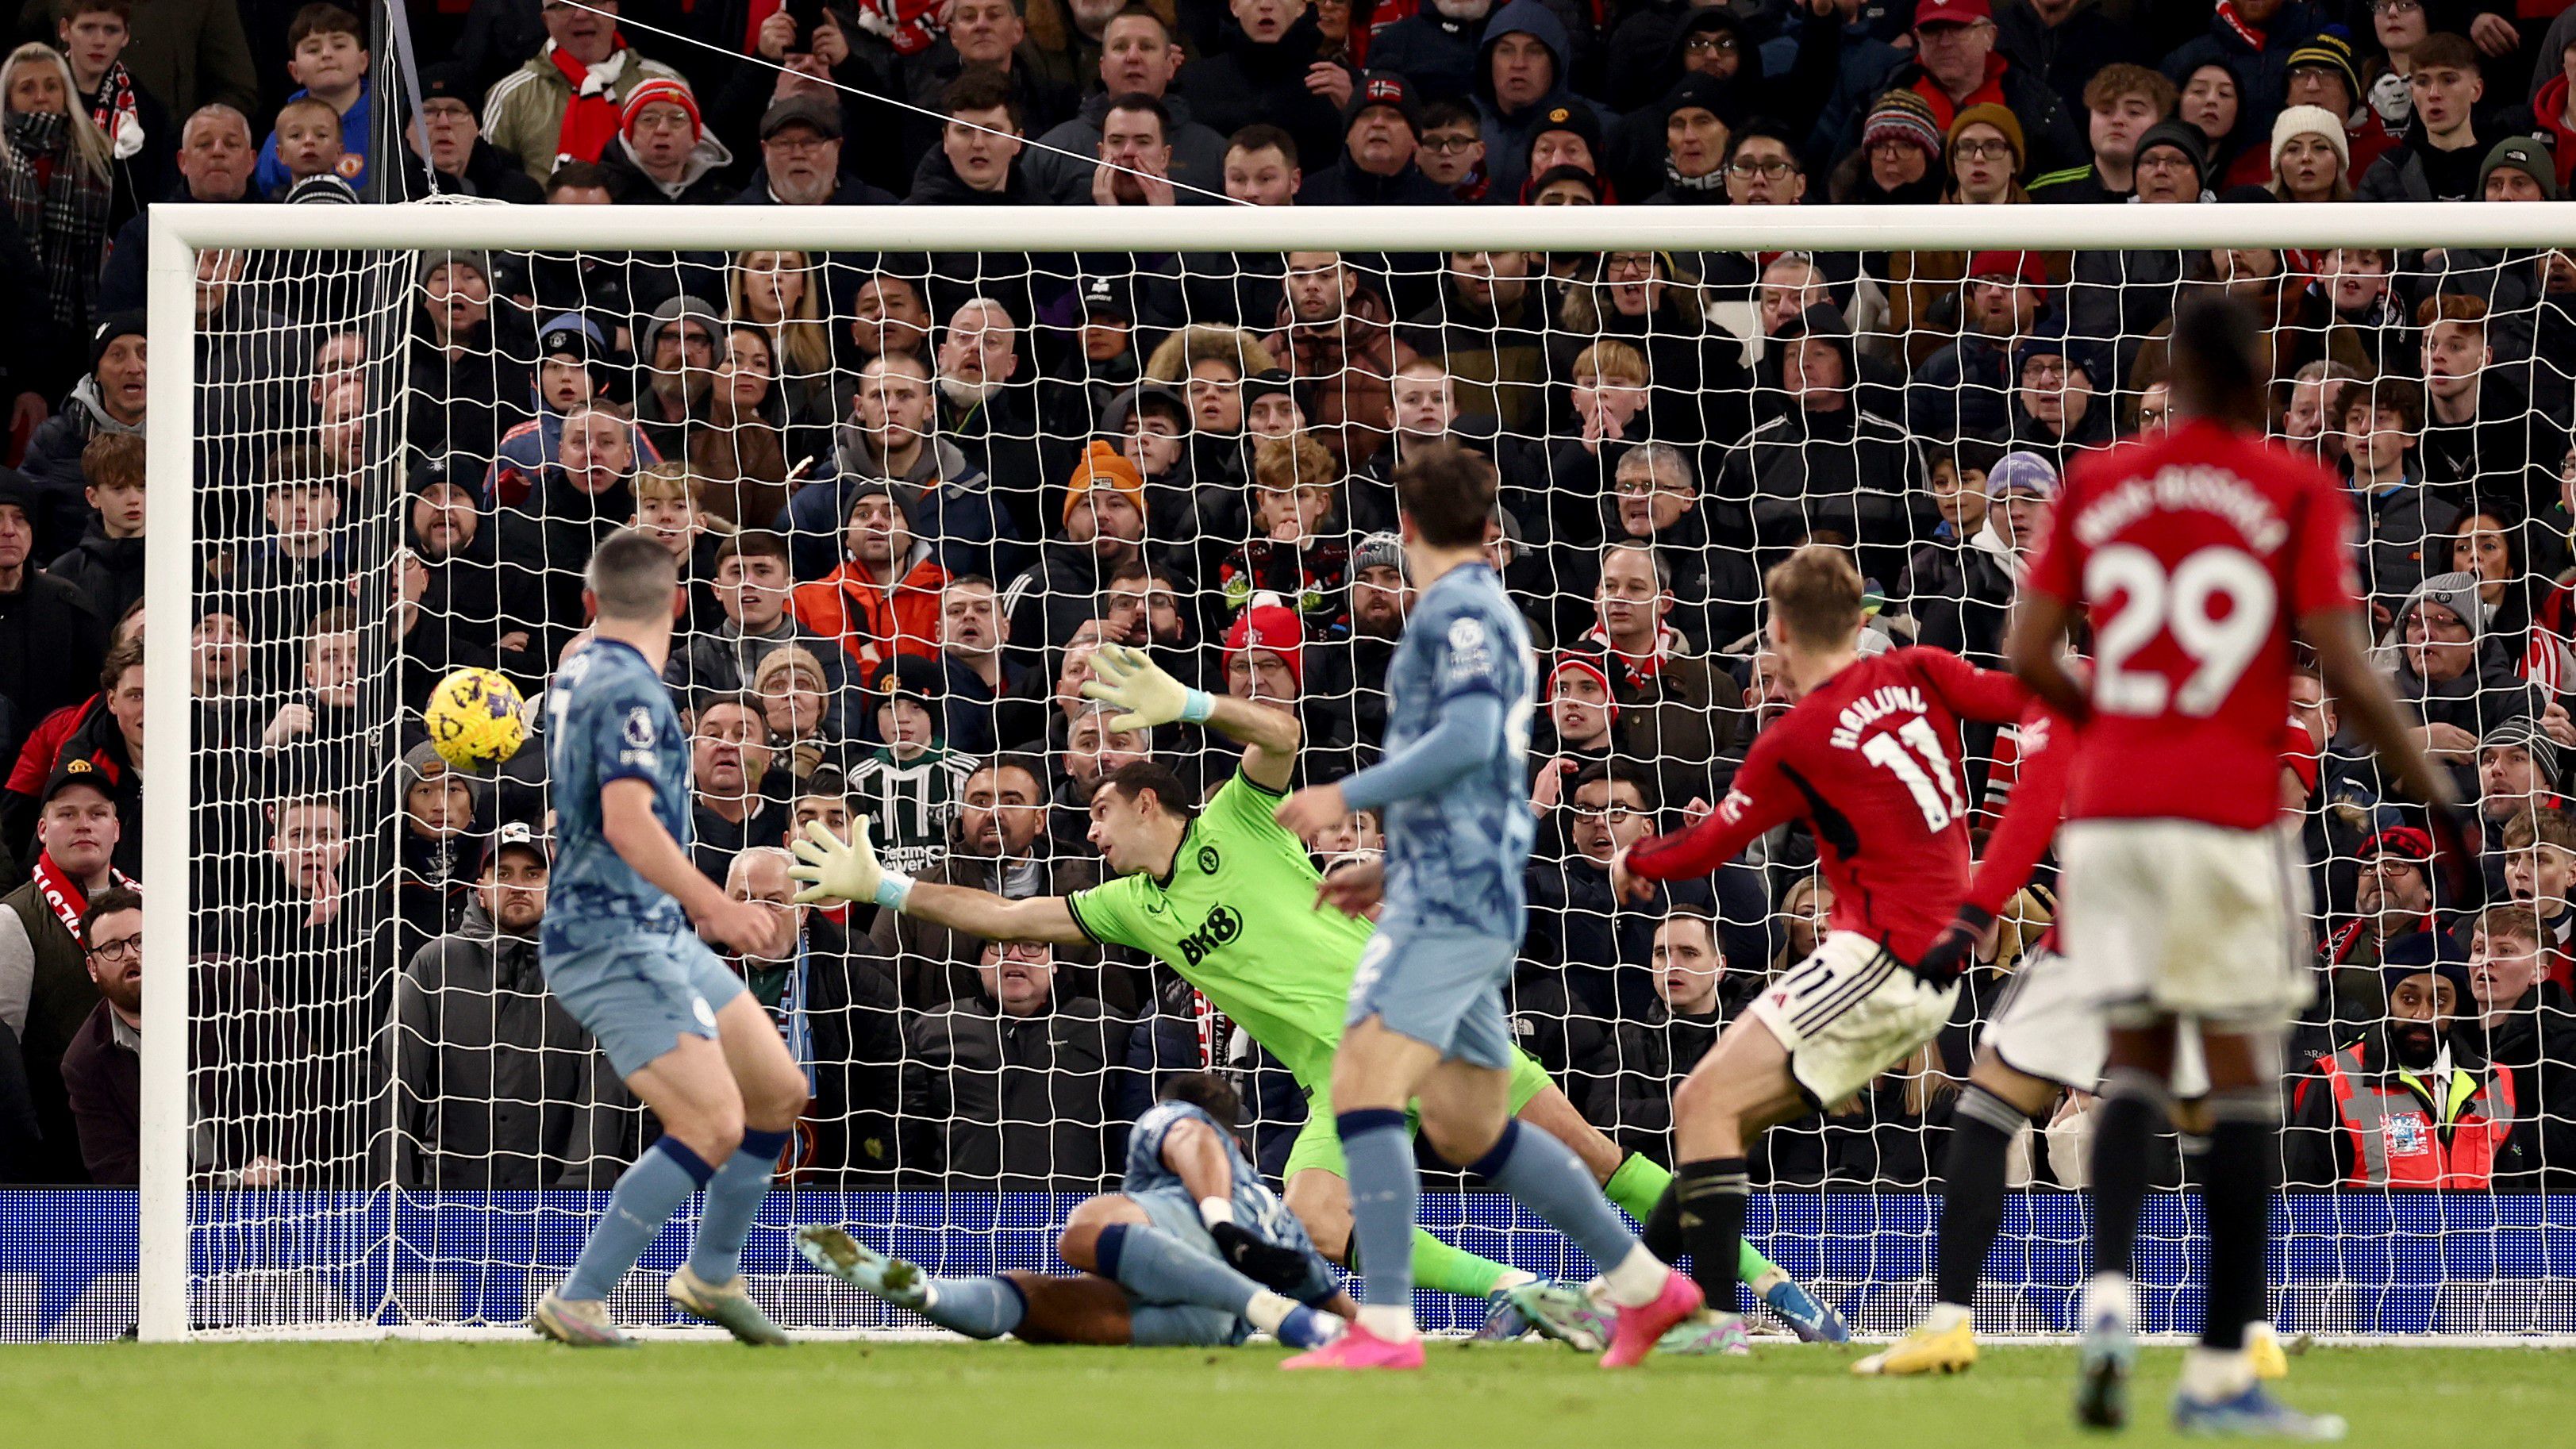 A mérkőzést eldöntő pillanat: Höjlund lövése után a labda a jobb sarokban kötött ki, a Manchester United ezzel a találattal fordított az Aston Villa ellen